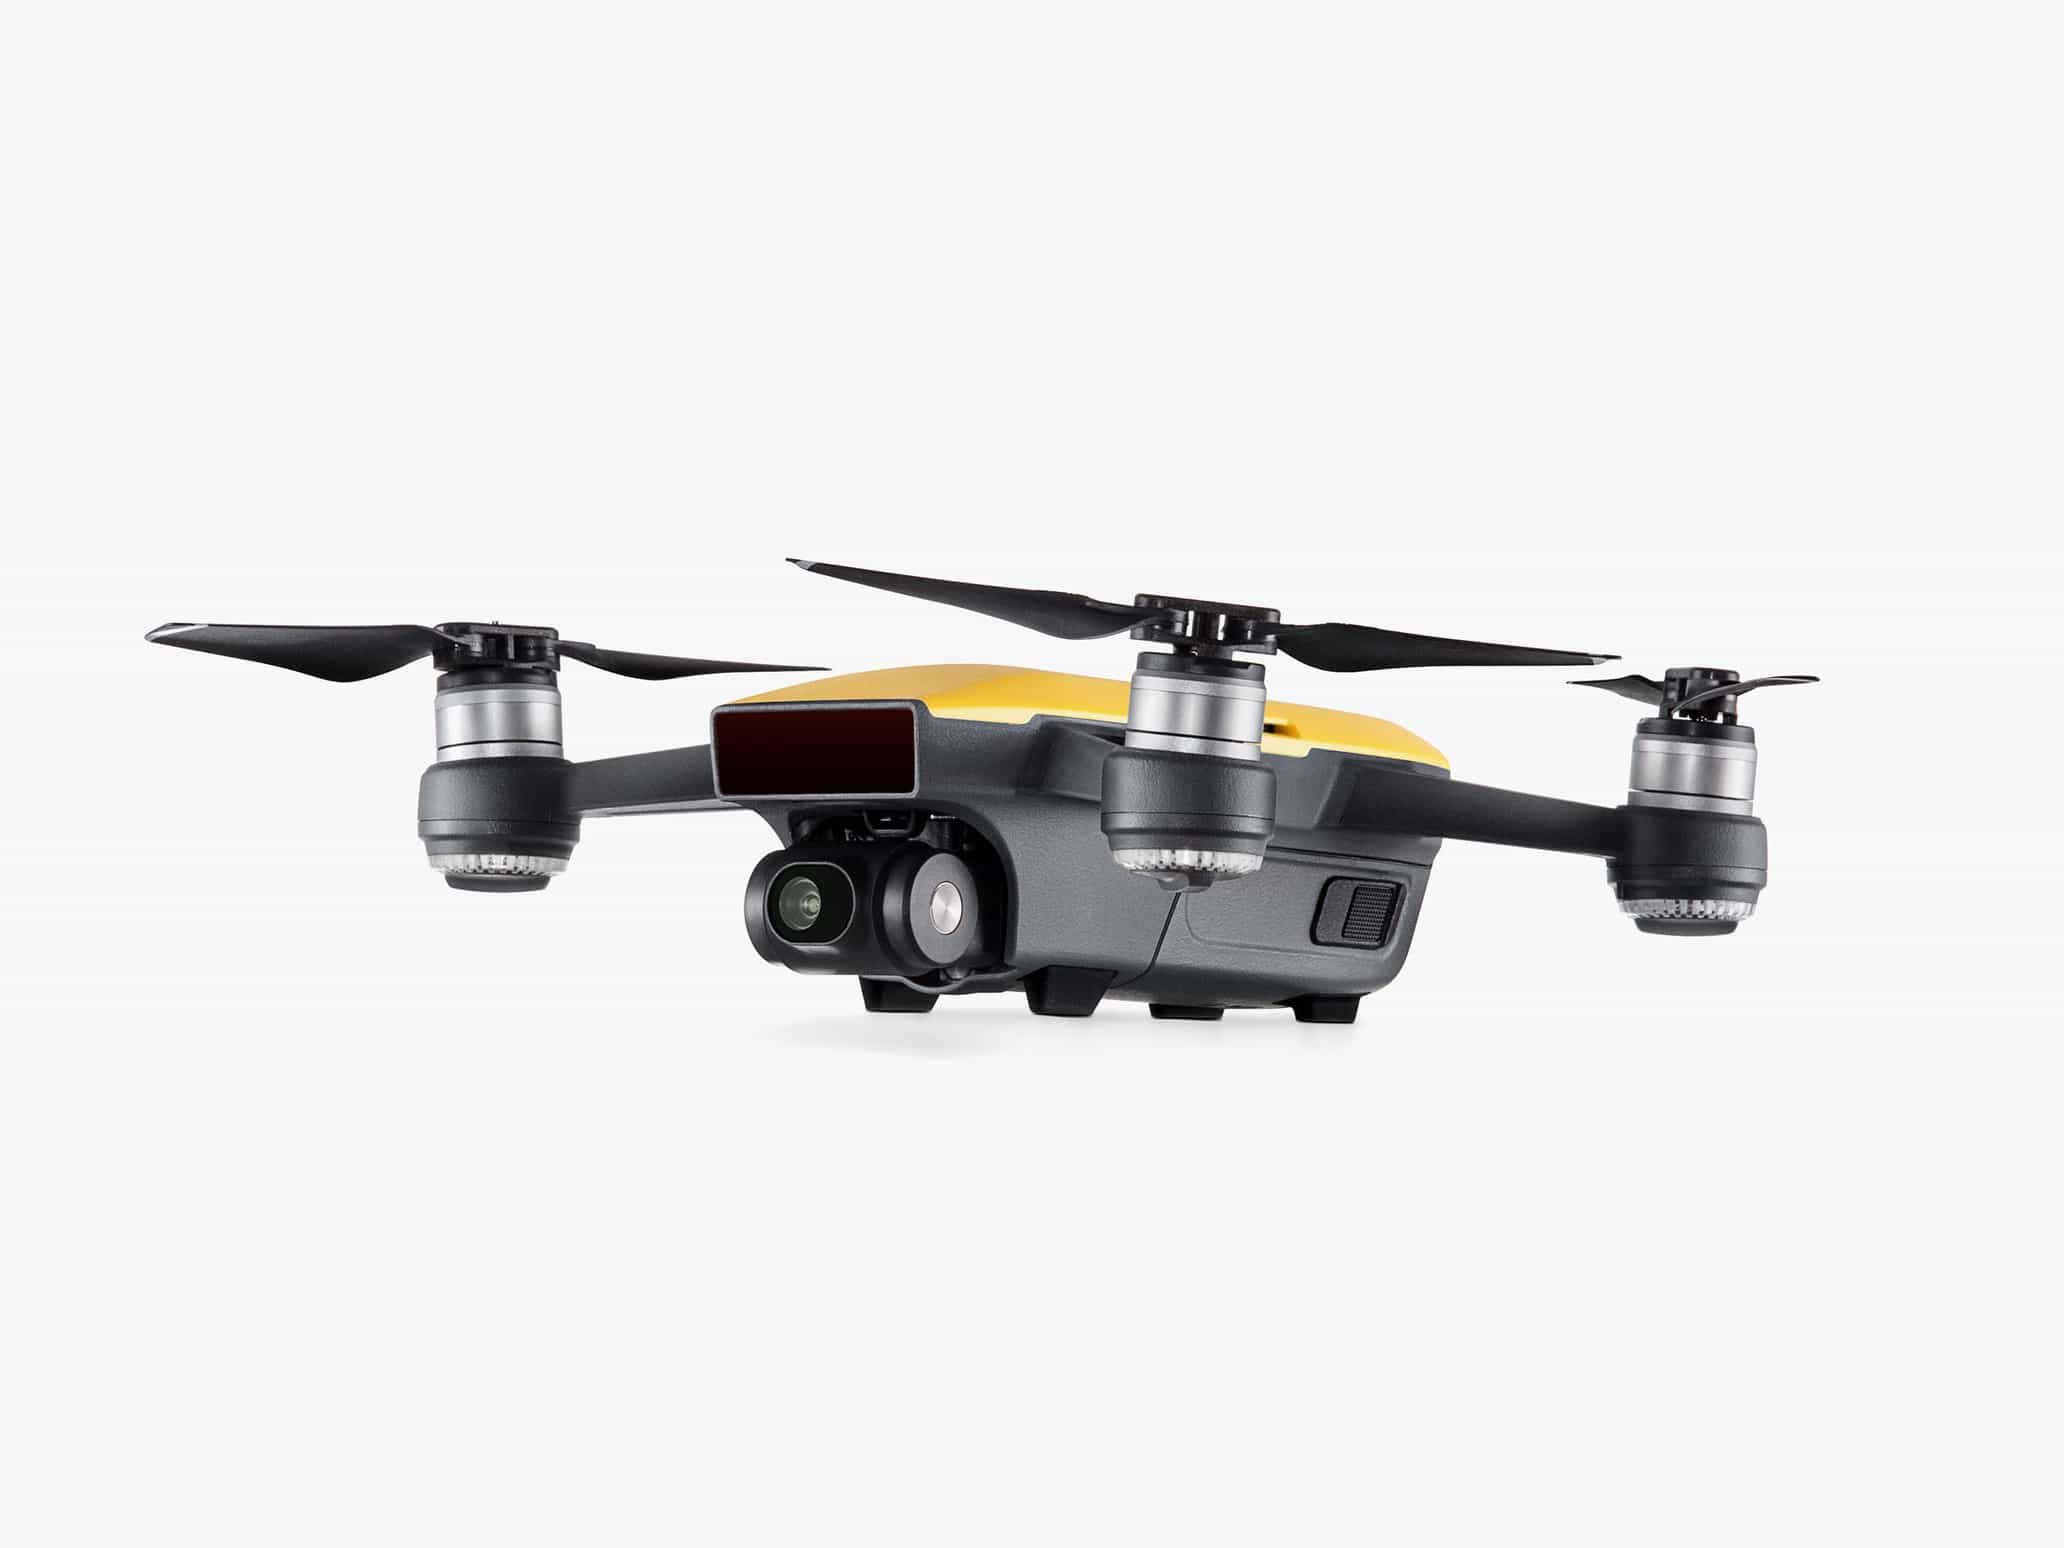 DJI en küçük ve en uygun fiyatlı drone'u Spark'ı tanıttı